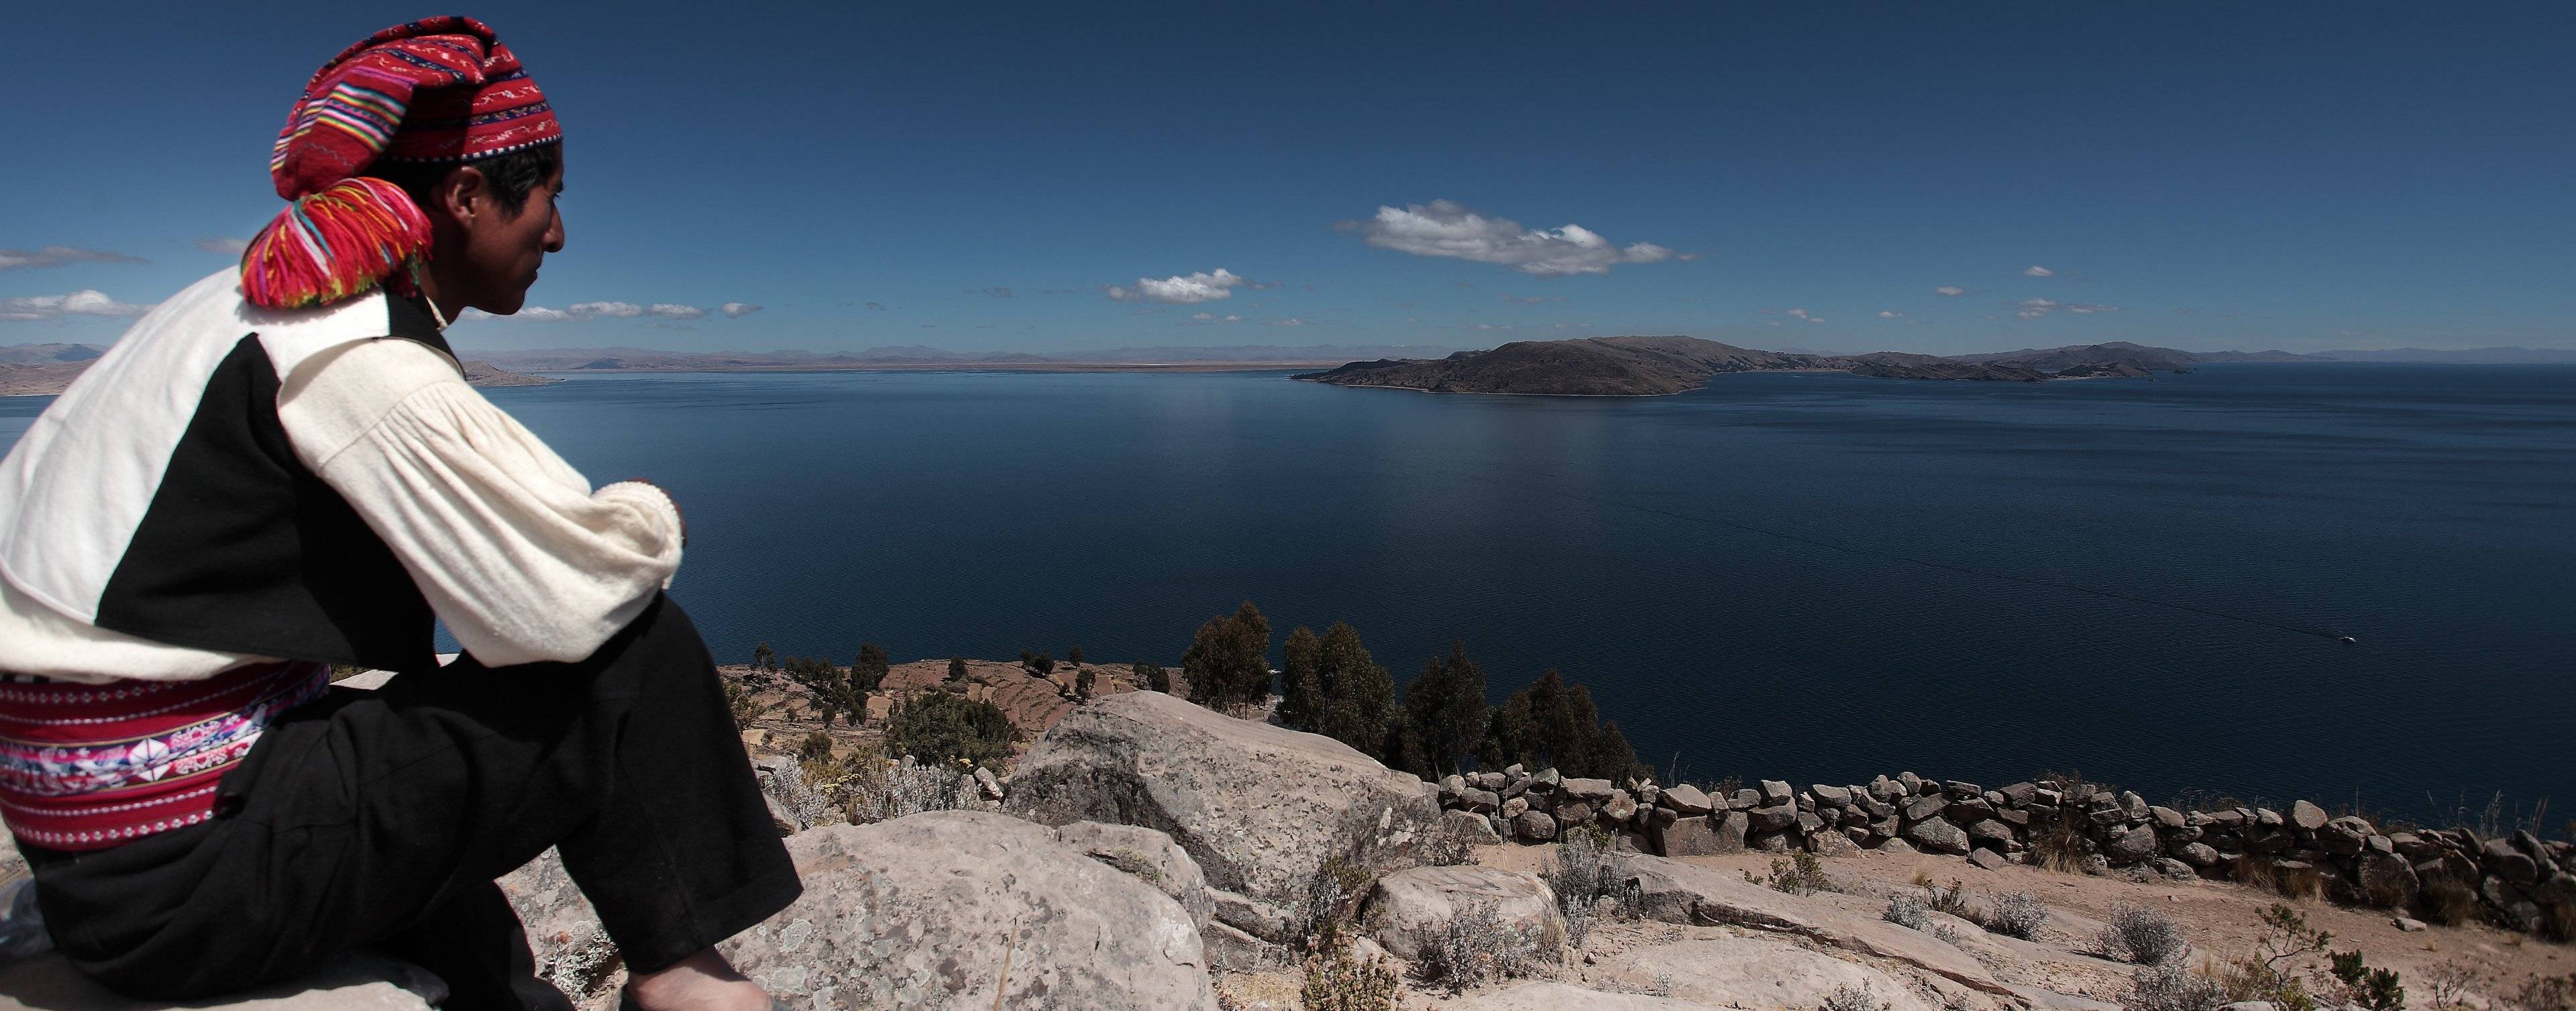 Navigation sur le lac Titicaca et balade sur l'île de Taquile